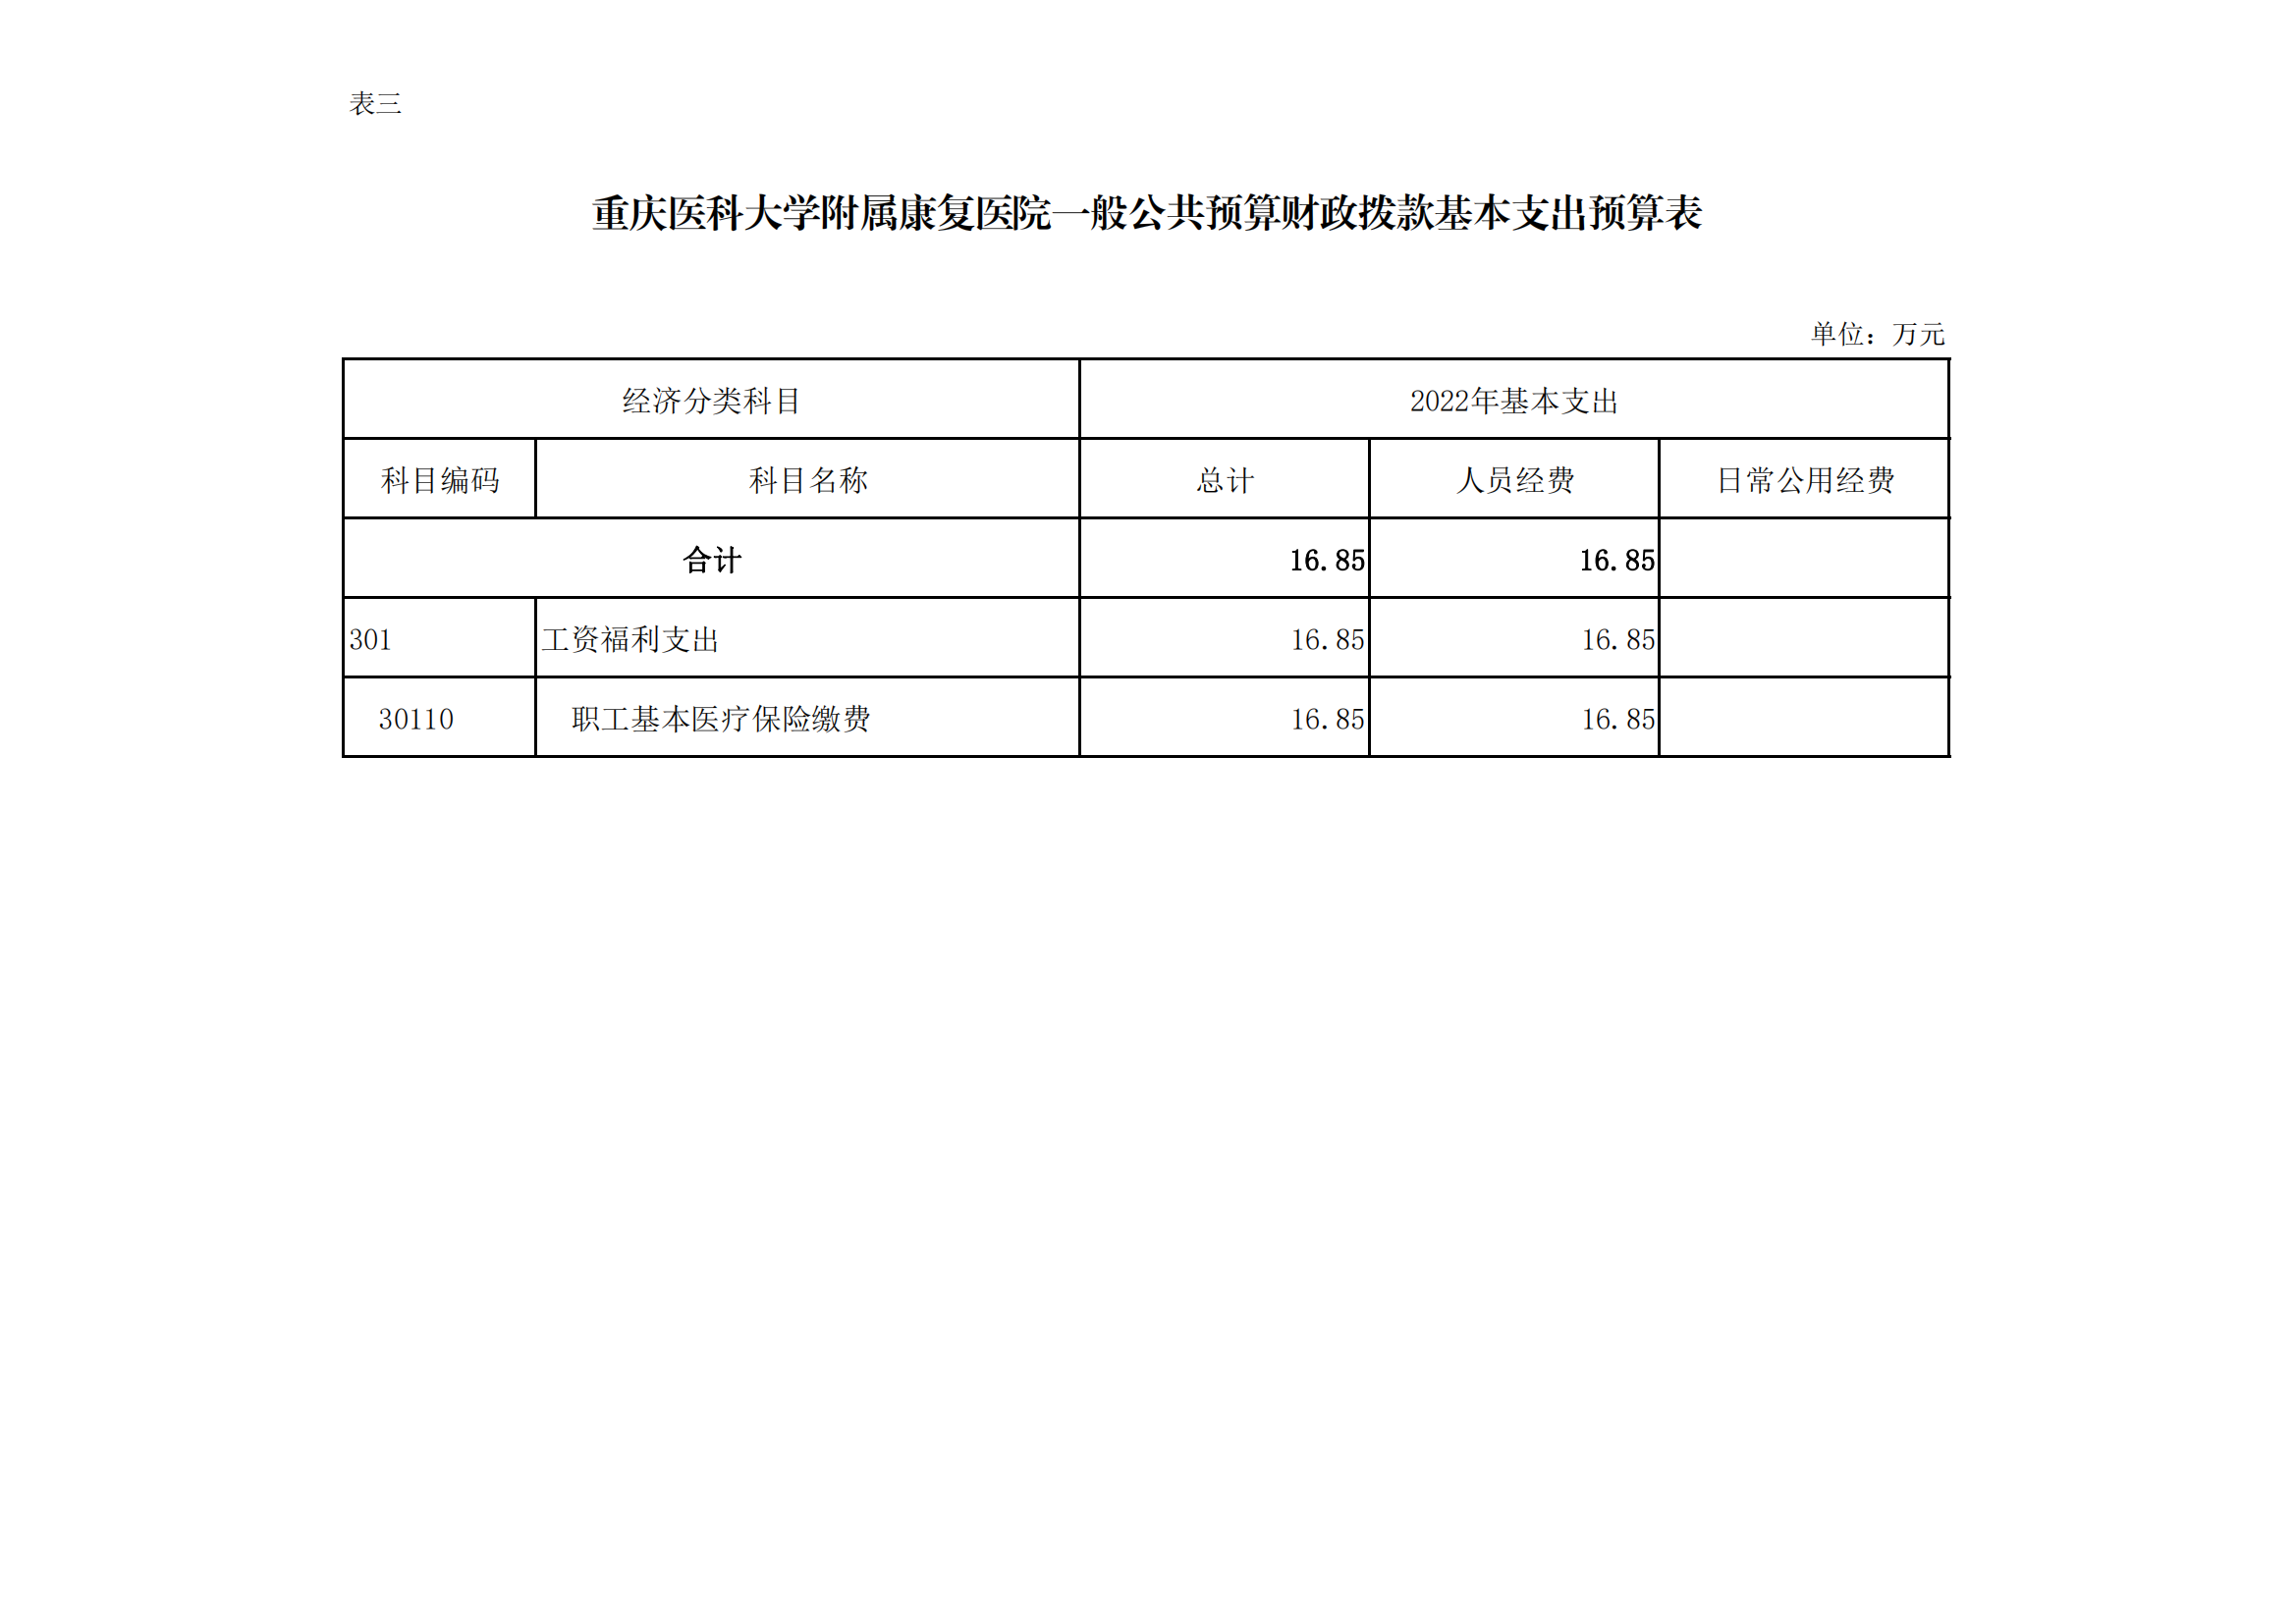 8、重庆医科大学附属康复医院2022年单位预算公开表(1)_02.png